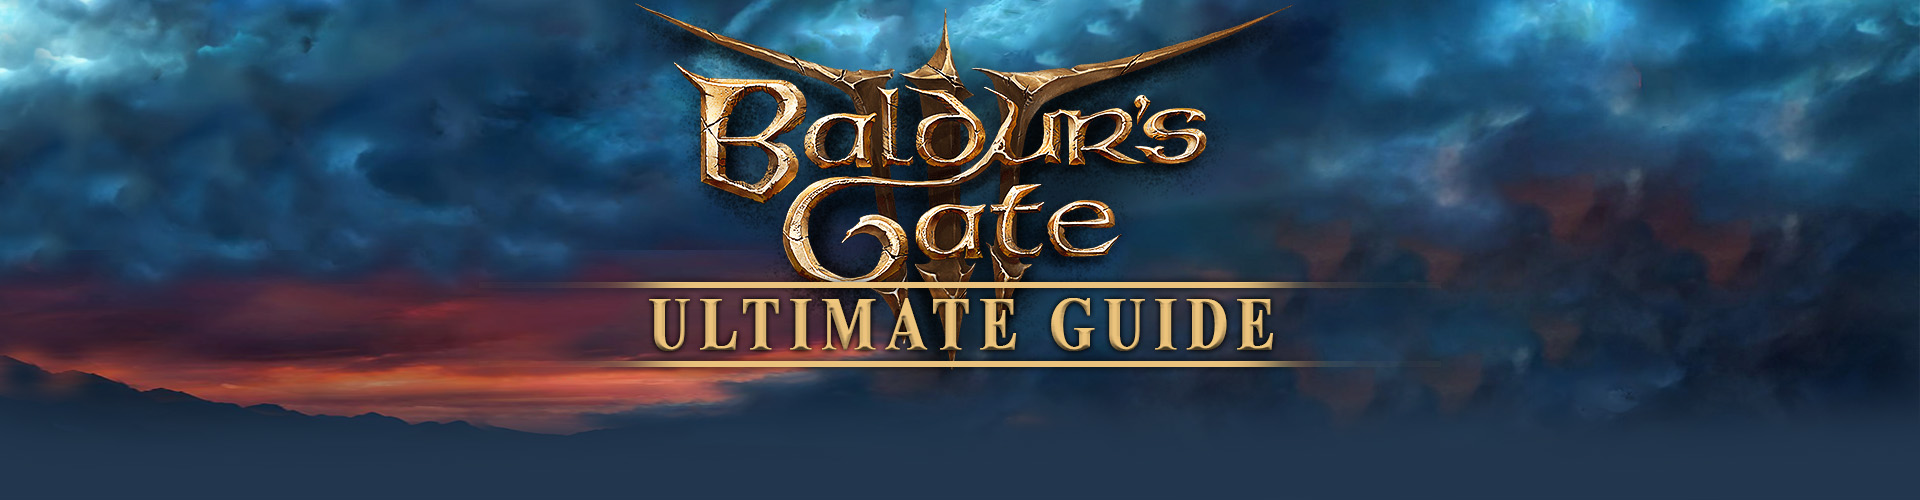 Spiele wie Baldur's Gate 3